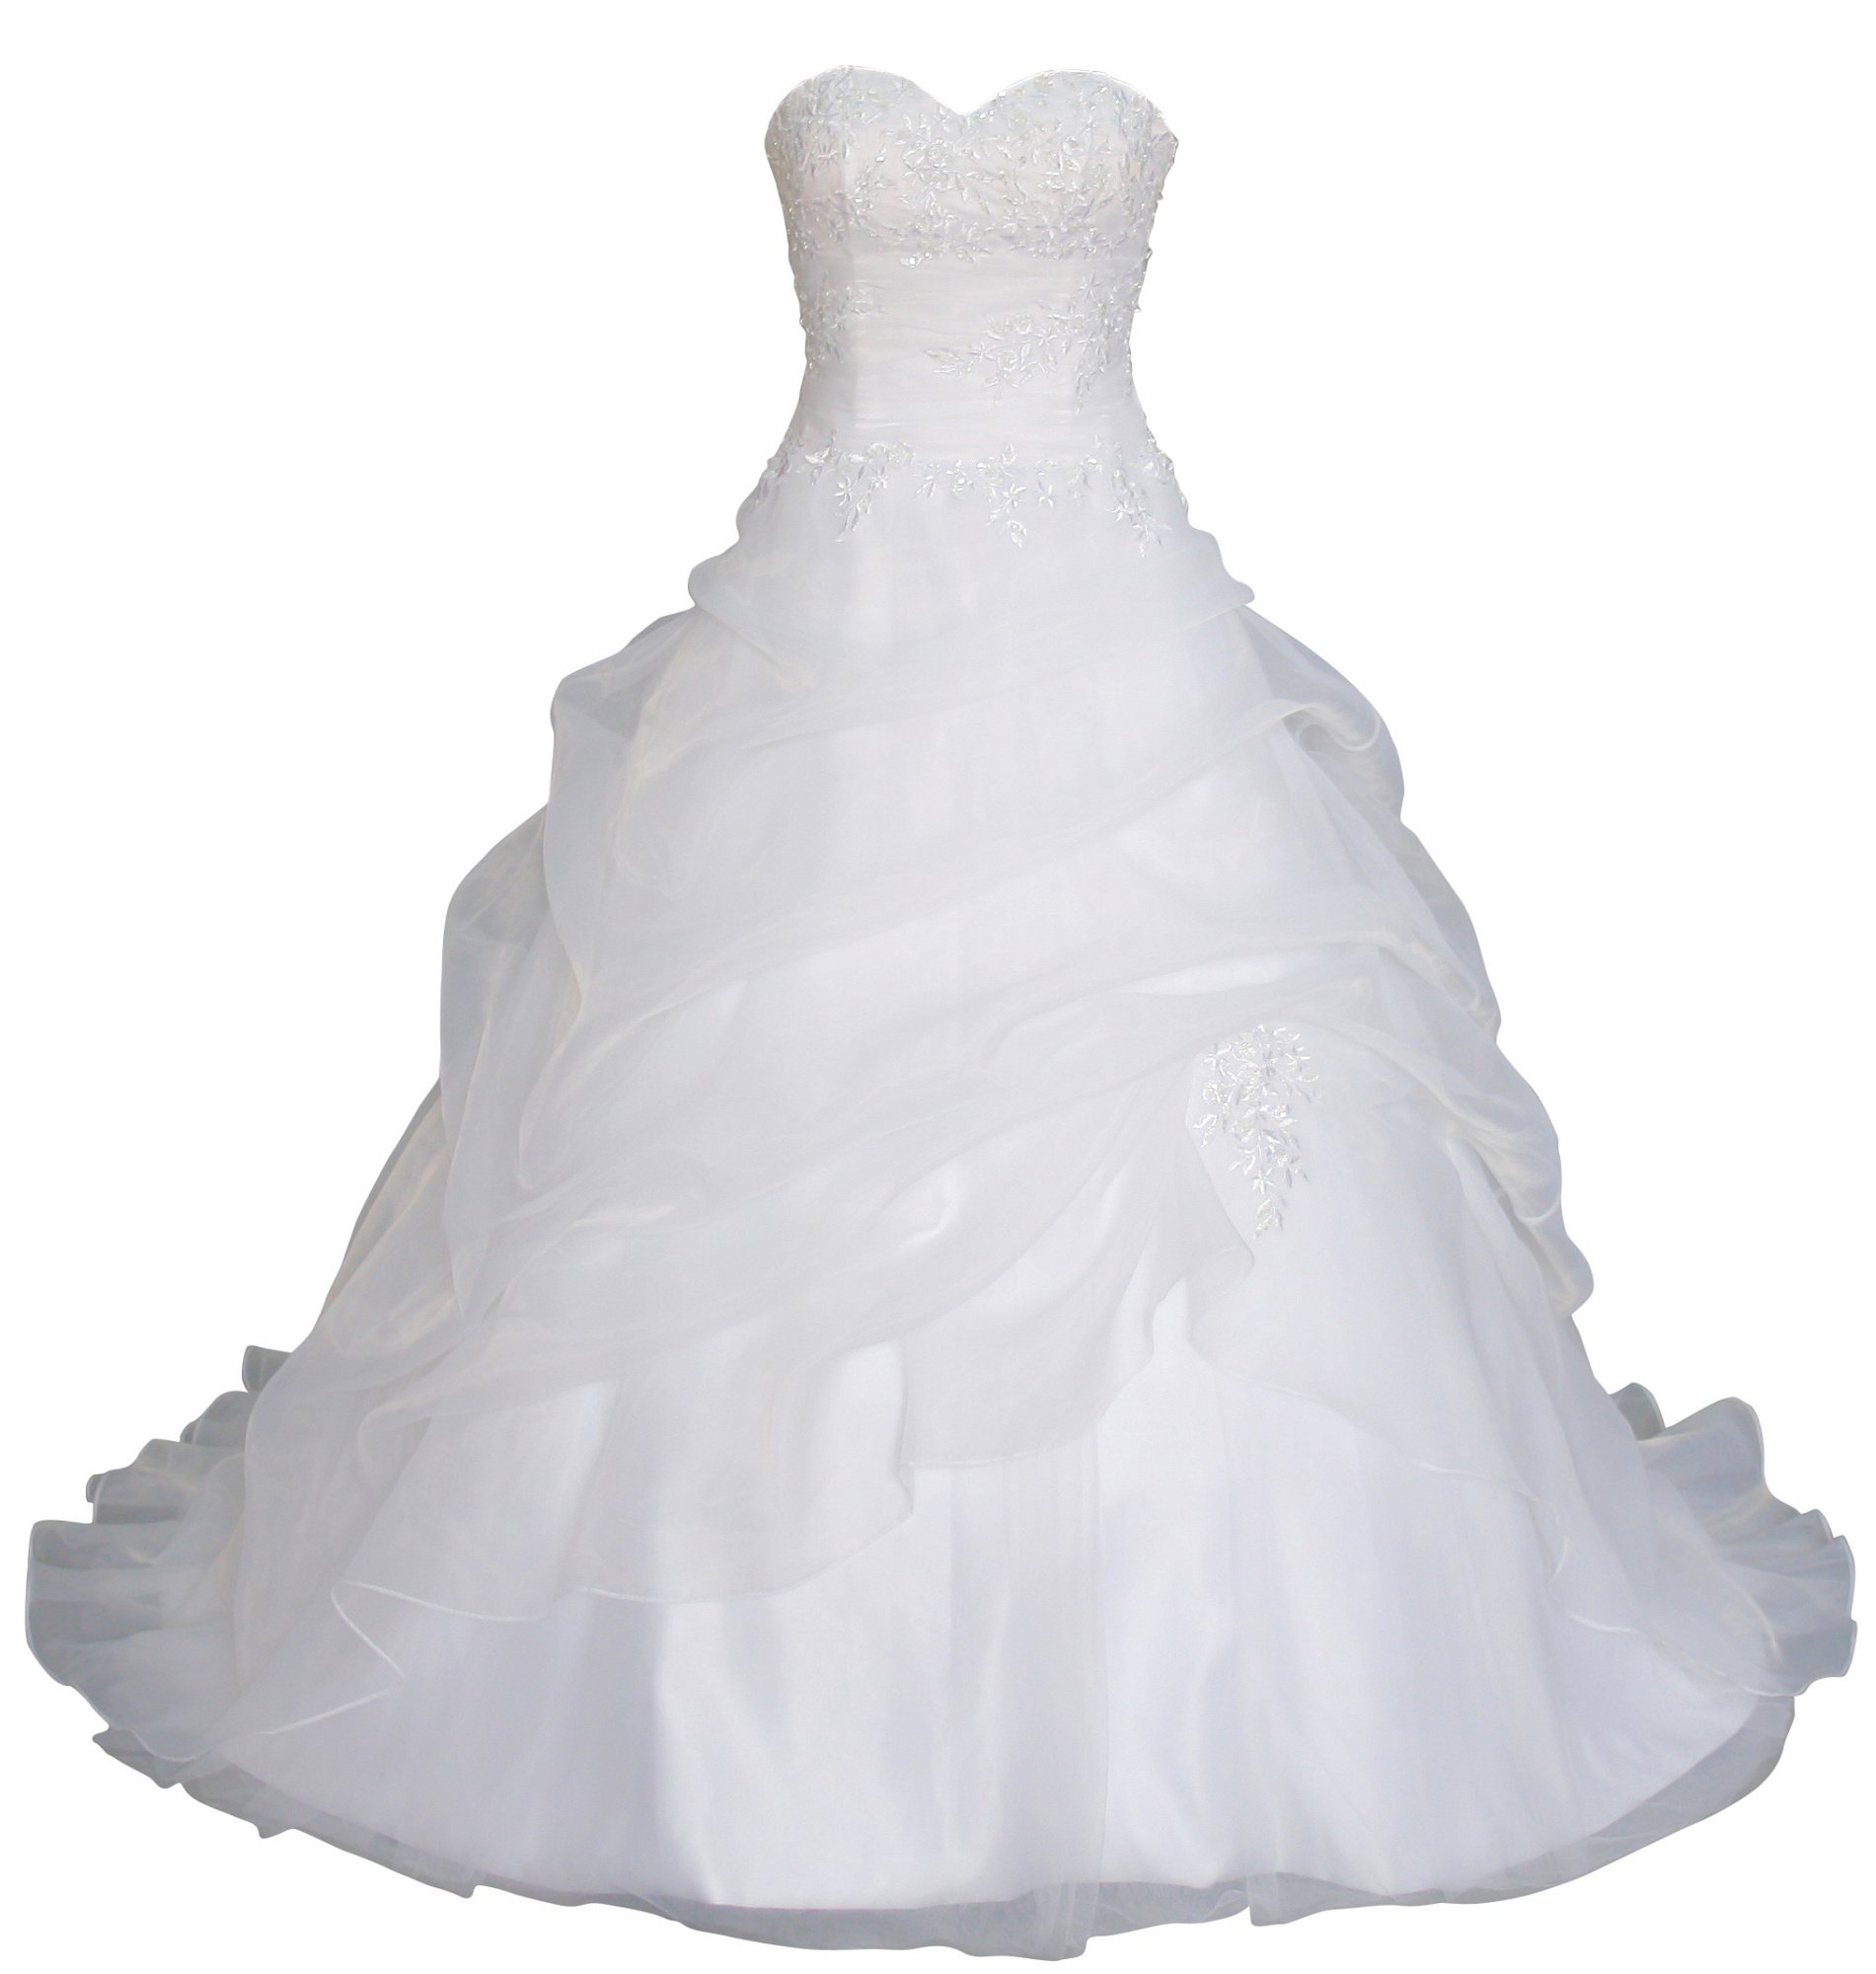 Romantic-Fashion Brautkleid Hochzeitskleid Weiß Modell W075 A-Linie Lang Satin Trägerlos Perlen Pailletten DE Größe 40